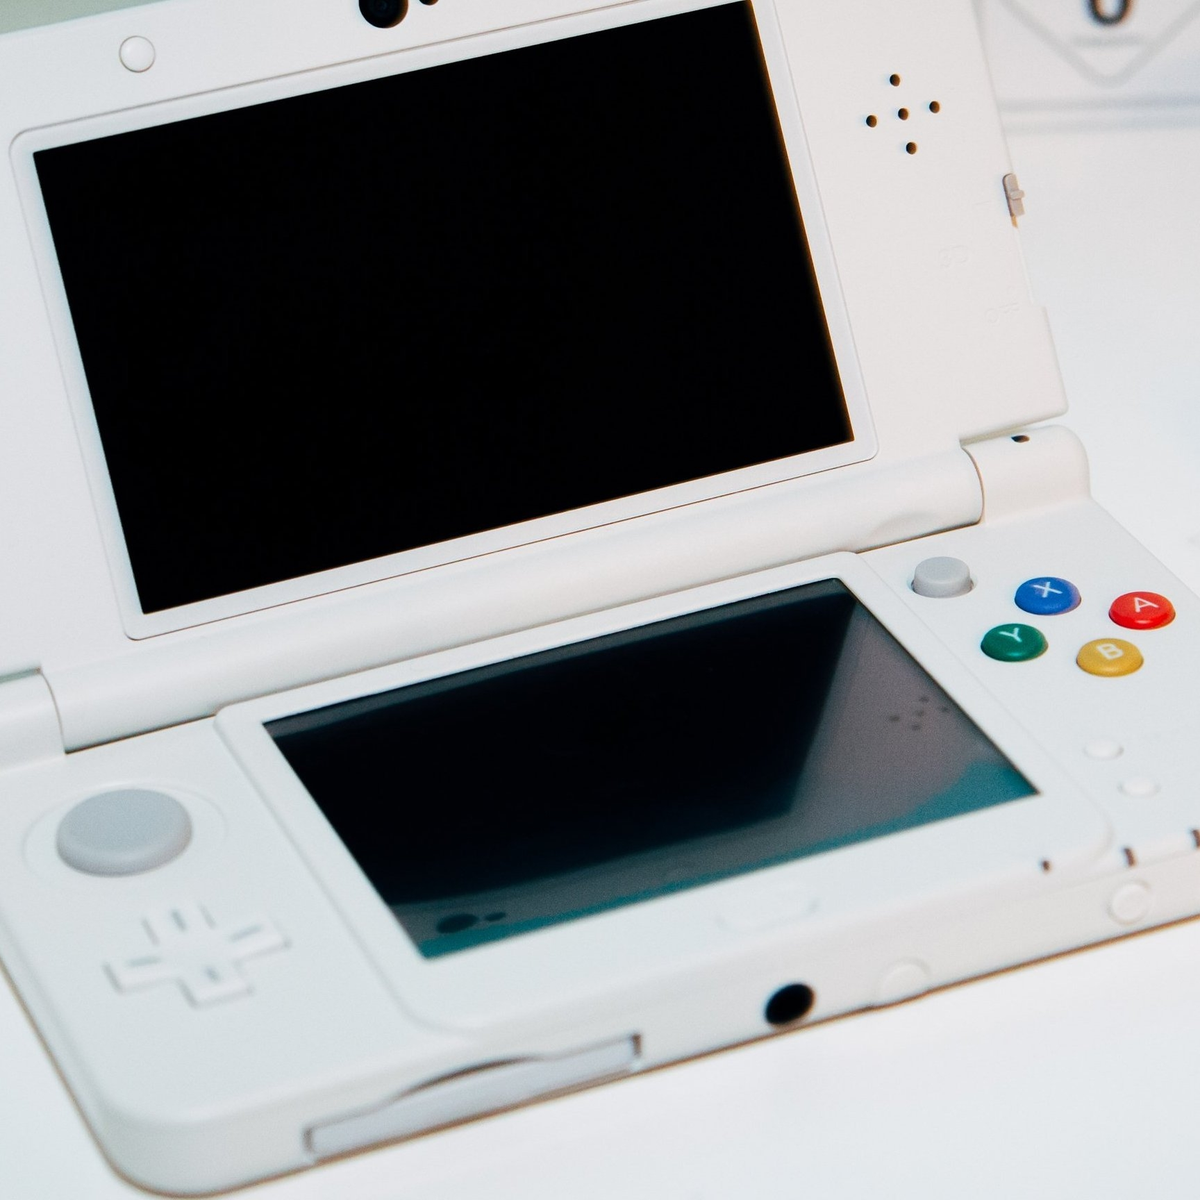 Geweldig Vervullen Of Maak kennis met de New Nintendo 3DS: Ambassador Edition | Eurogamer.nl